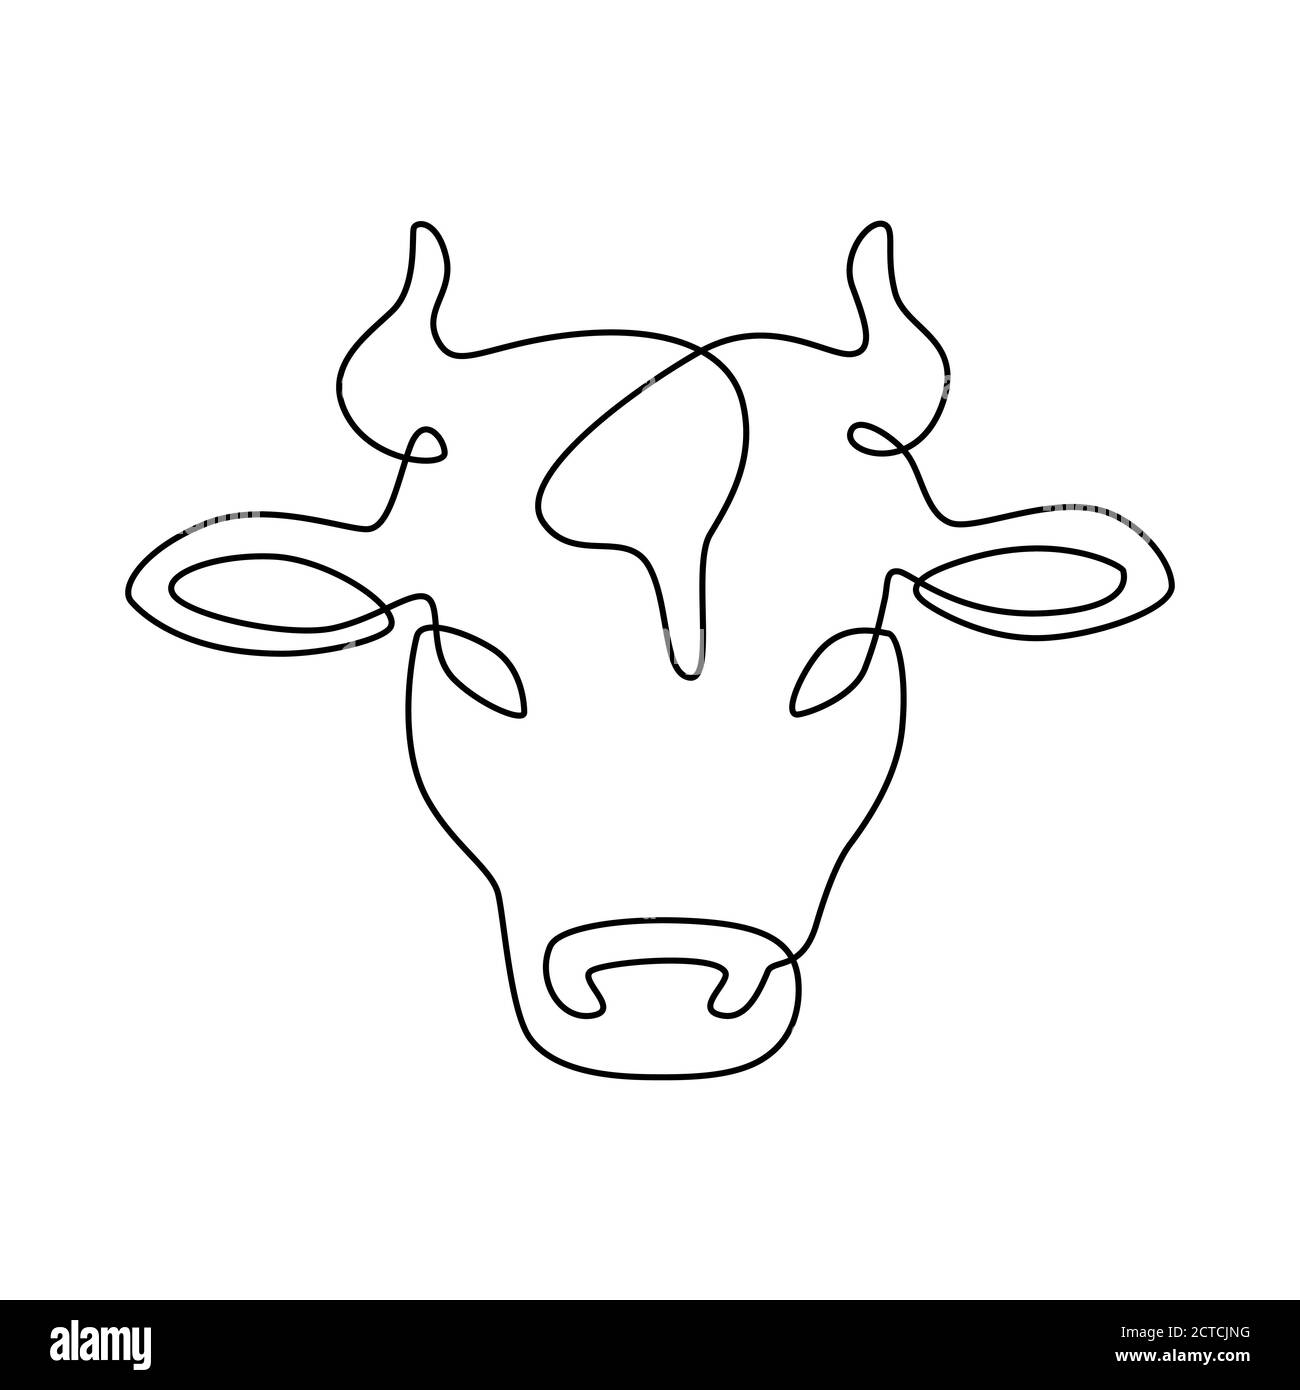 Linea testa vacca. Logo dell'azienda agricola di carne di latte e manzo, etichetta del prodotto lattiero-caseario. Vettore bovino a linea continua isolato su emblema bianco. Animali da allevamento o Illustrazione Vettoriale